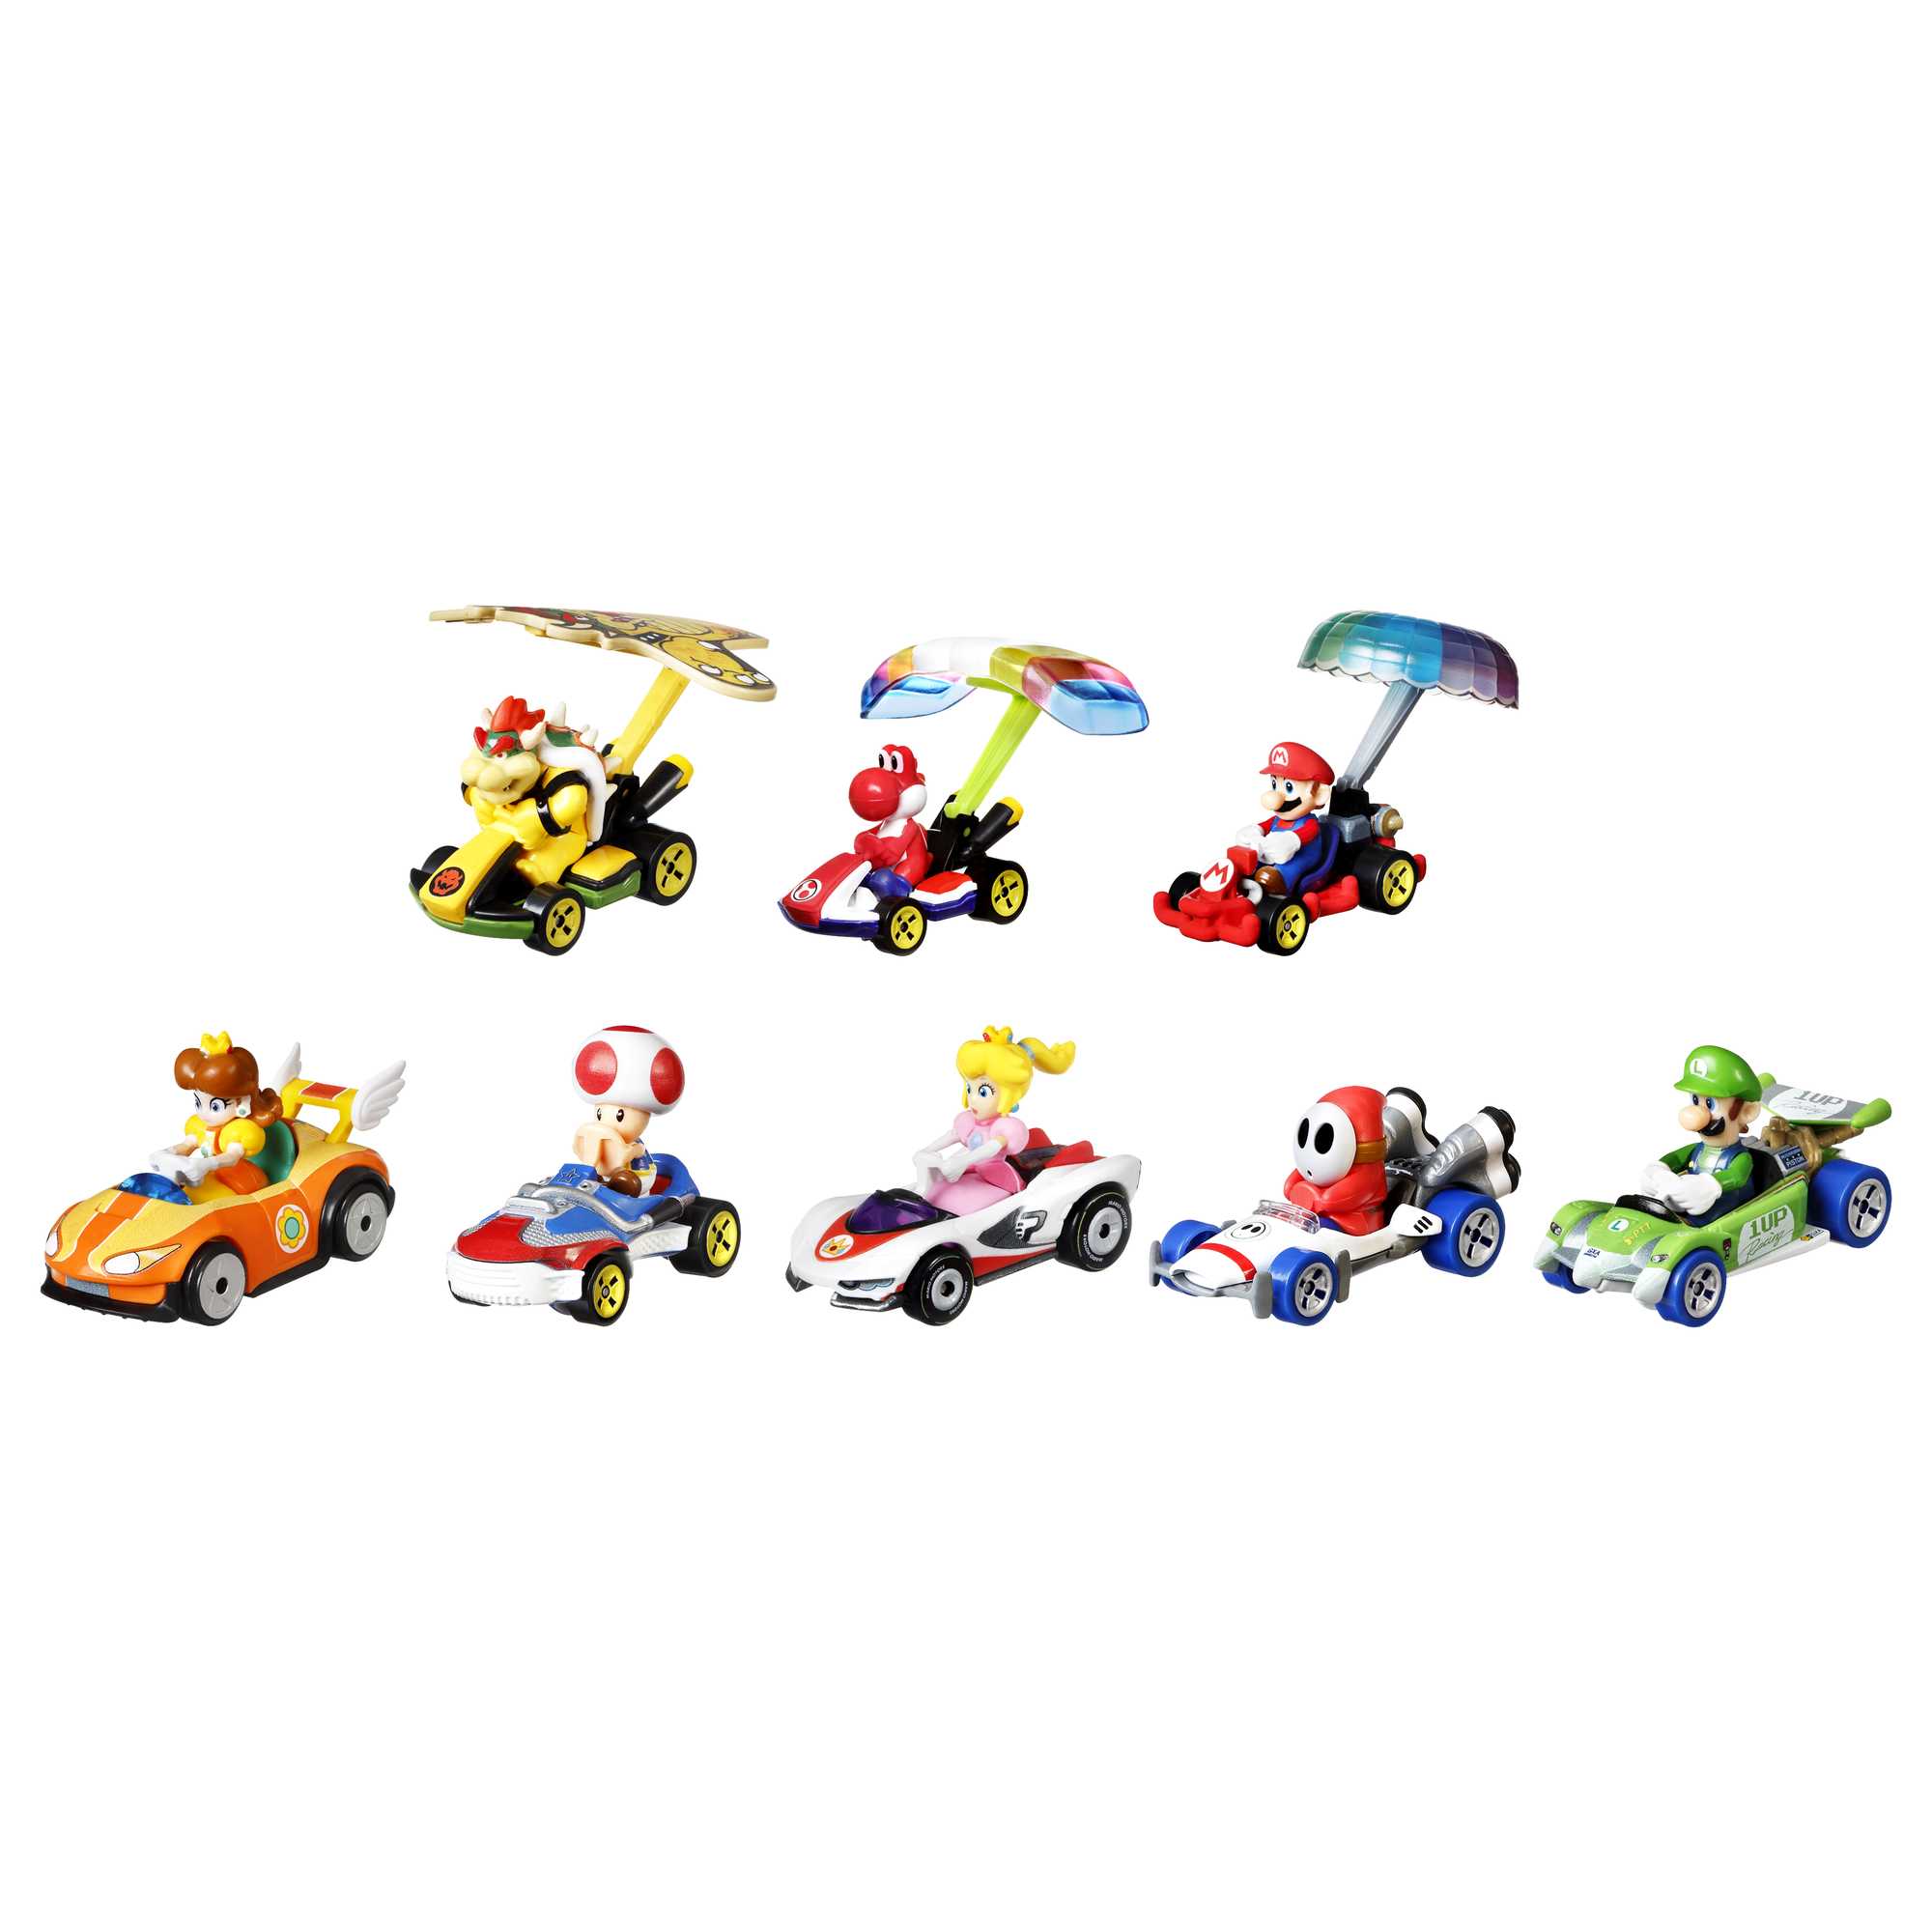 Hot wheels Mariokart Bowsers Castle Chaos Play Set Multicolor